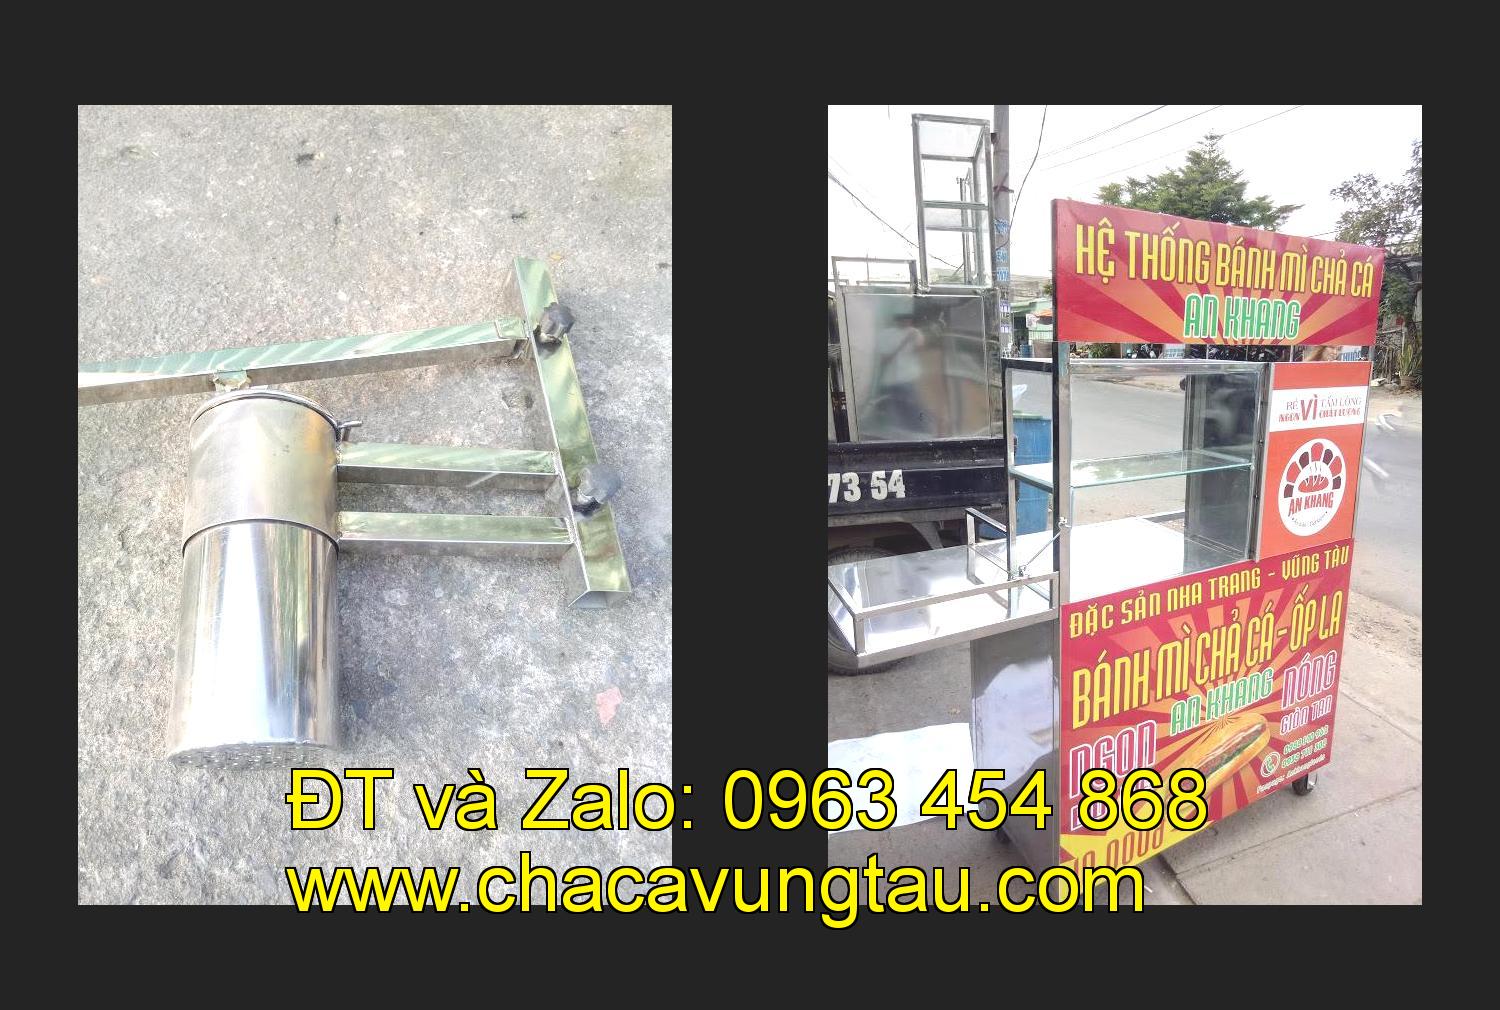 Bán xe bánh mì chả cá tại tỉnh Lâm Đồng